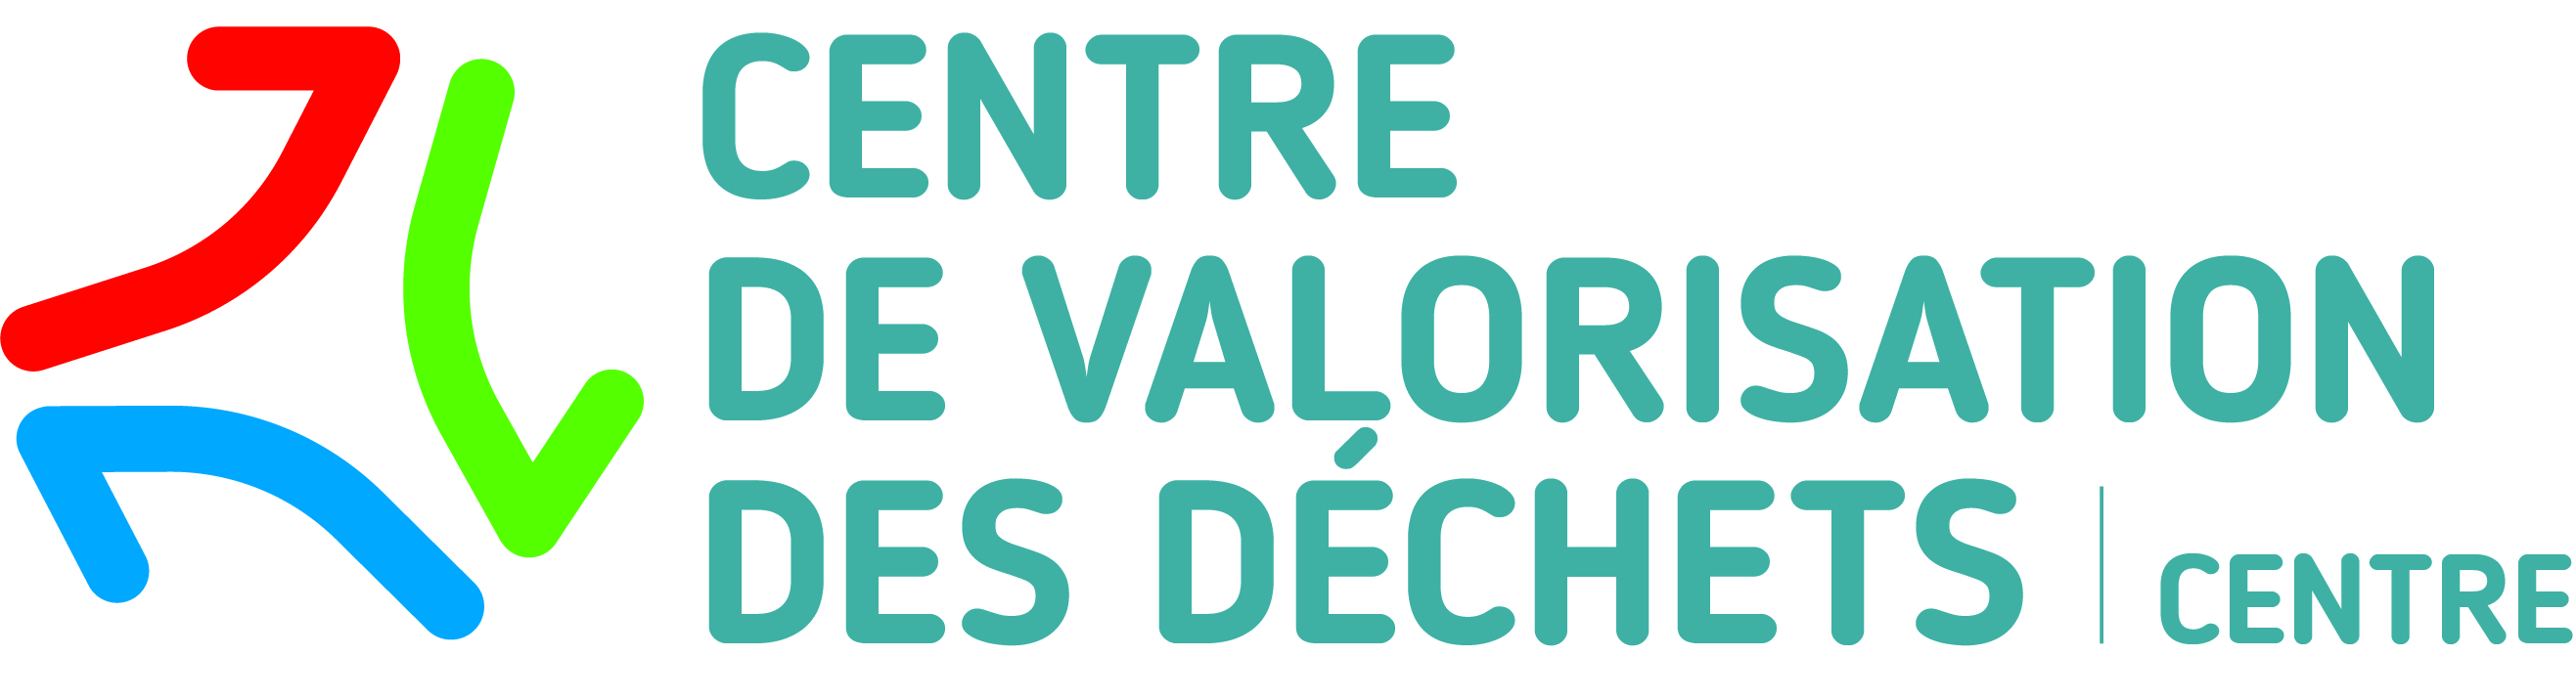 Logo Centre de valorisation des déchets Centre